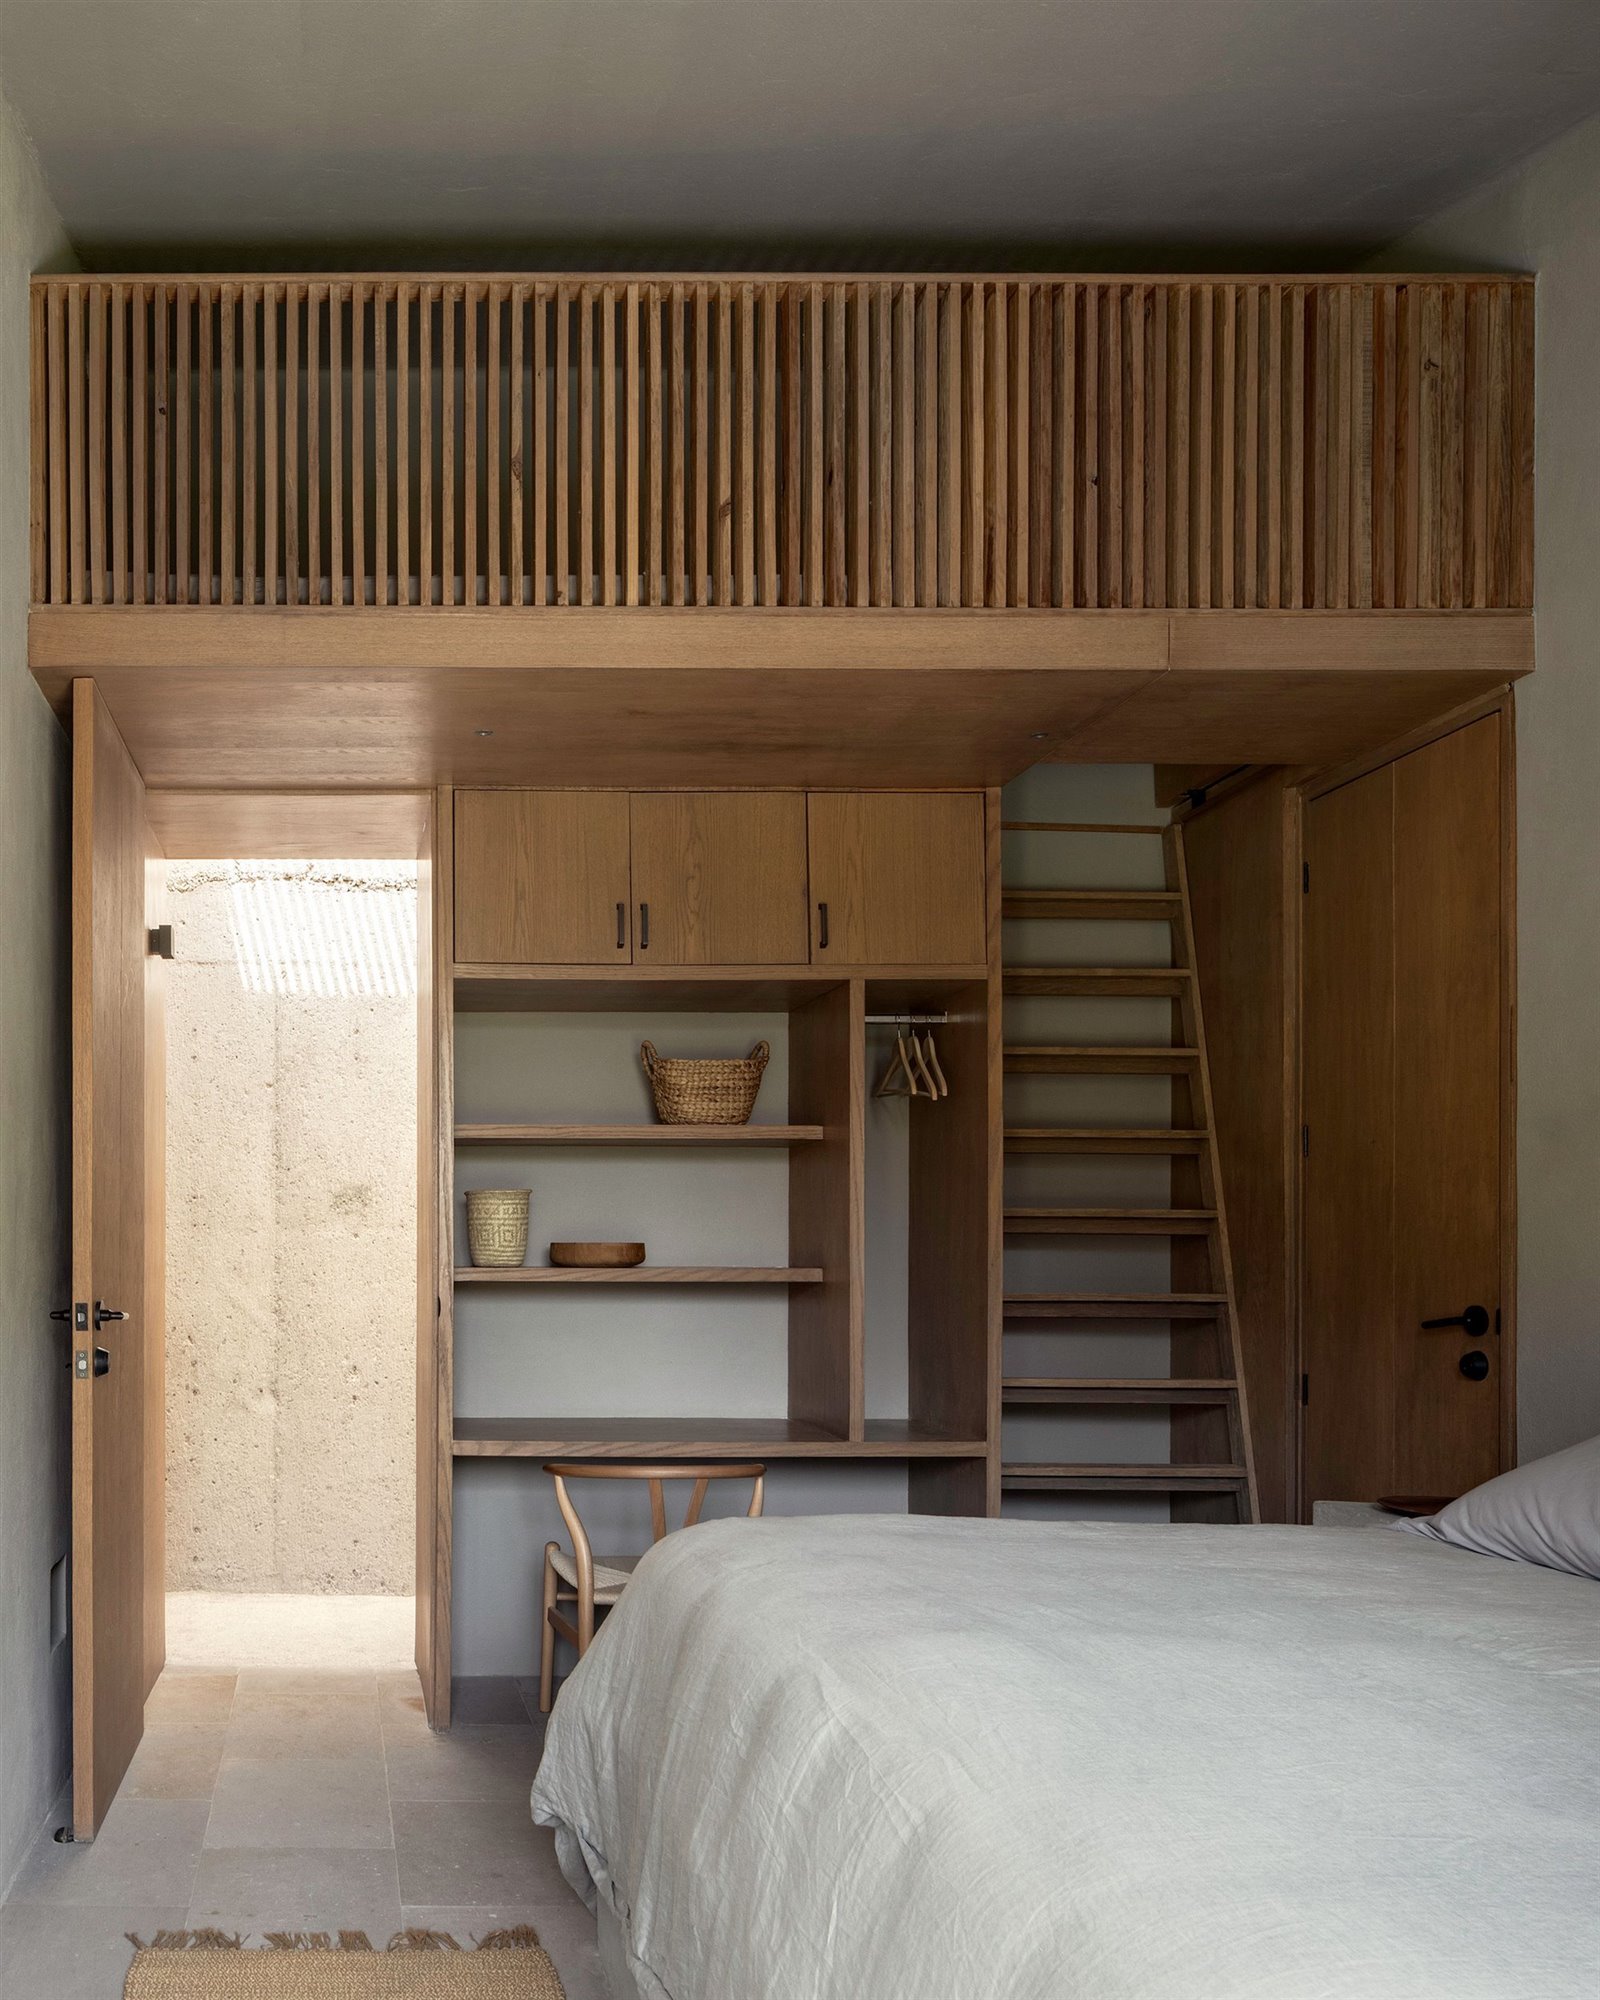 Casa en mexico con techos de madera dormitorio con escalera